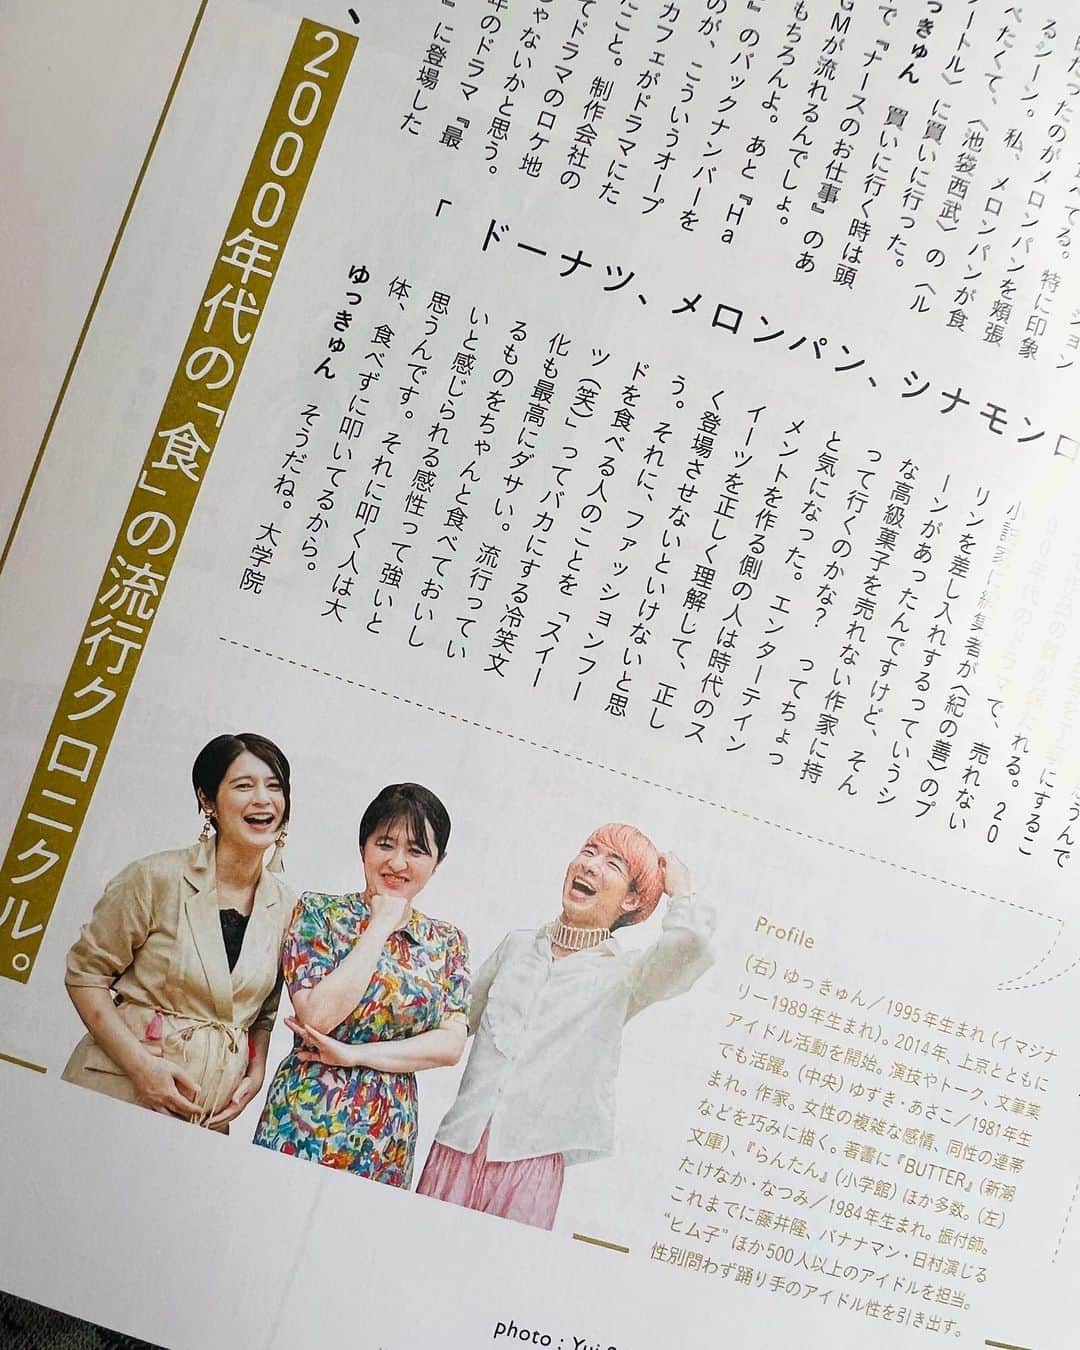 竹中夏海のインスタグラム：「発売中の @hanako_magazine にて Y2K新書の3人で「2000年代の食のクロニクル」 を振り返るインタビューが掲載されています  われわれ毎度のことですがとにかく話が横滑りしていくので  インタビュー時間の8割は柚木さんが 「日本のドラマが描く食と貧困について」語っていたり  私が「NANAのハチはスイーツ（笑）と揶揄される 女性の中で初めて正当に評価されたヒロインなのでは？」 と提唱したり  00年代スイーツブームのときには岡山で元気な小学生だったゆっきゅんを置いてきぼり気味にしたり  まぁむちゃくちゃだったんですが、 それをうまーーーーくまとめてもらっています  プロってすごいね🧁🍩🥮🍧🫖🍨🫘  ぜひご覧くださいませ！  爆笑するゆっきゅんと私、 真ん中で不敵な笑みを浮かべる柚木さん、 写真が良すぎる。  #hanako #Y2K新書 #00年代スイーツ #かもめ食堂 #シナモンロール #シナボン #マラサダ #ホノカアボーイ #クリスピークリームドーナツ #ナースのお仕事 #メロンパン #坂口憲二 #紀の善プリン #タピオカ #タピオカ女子」